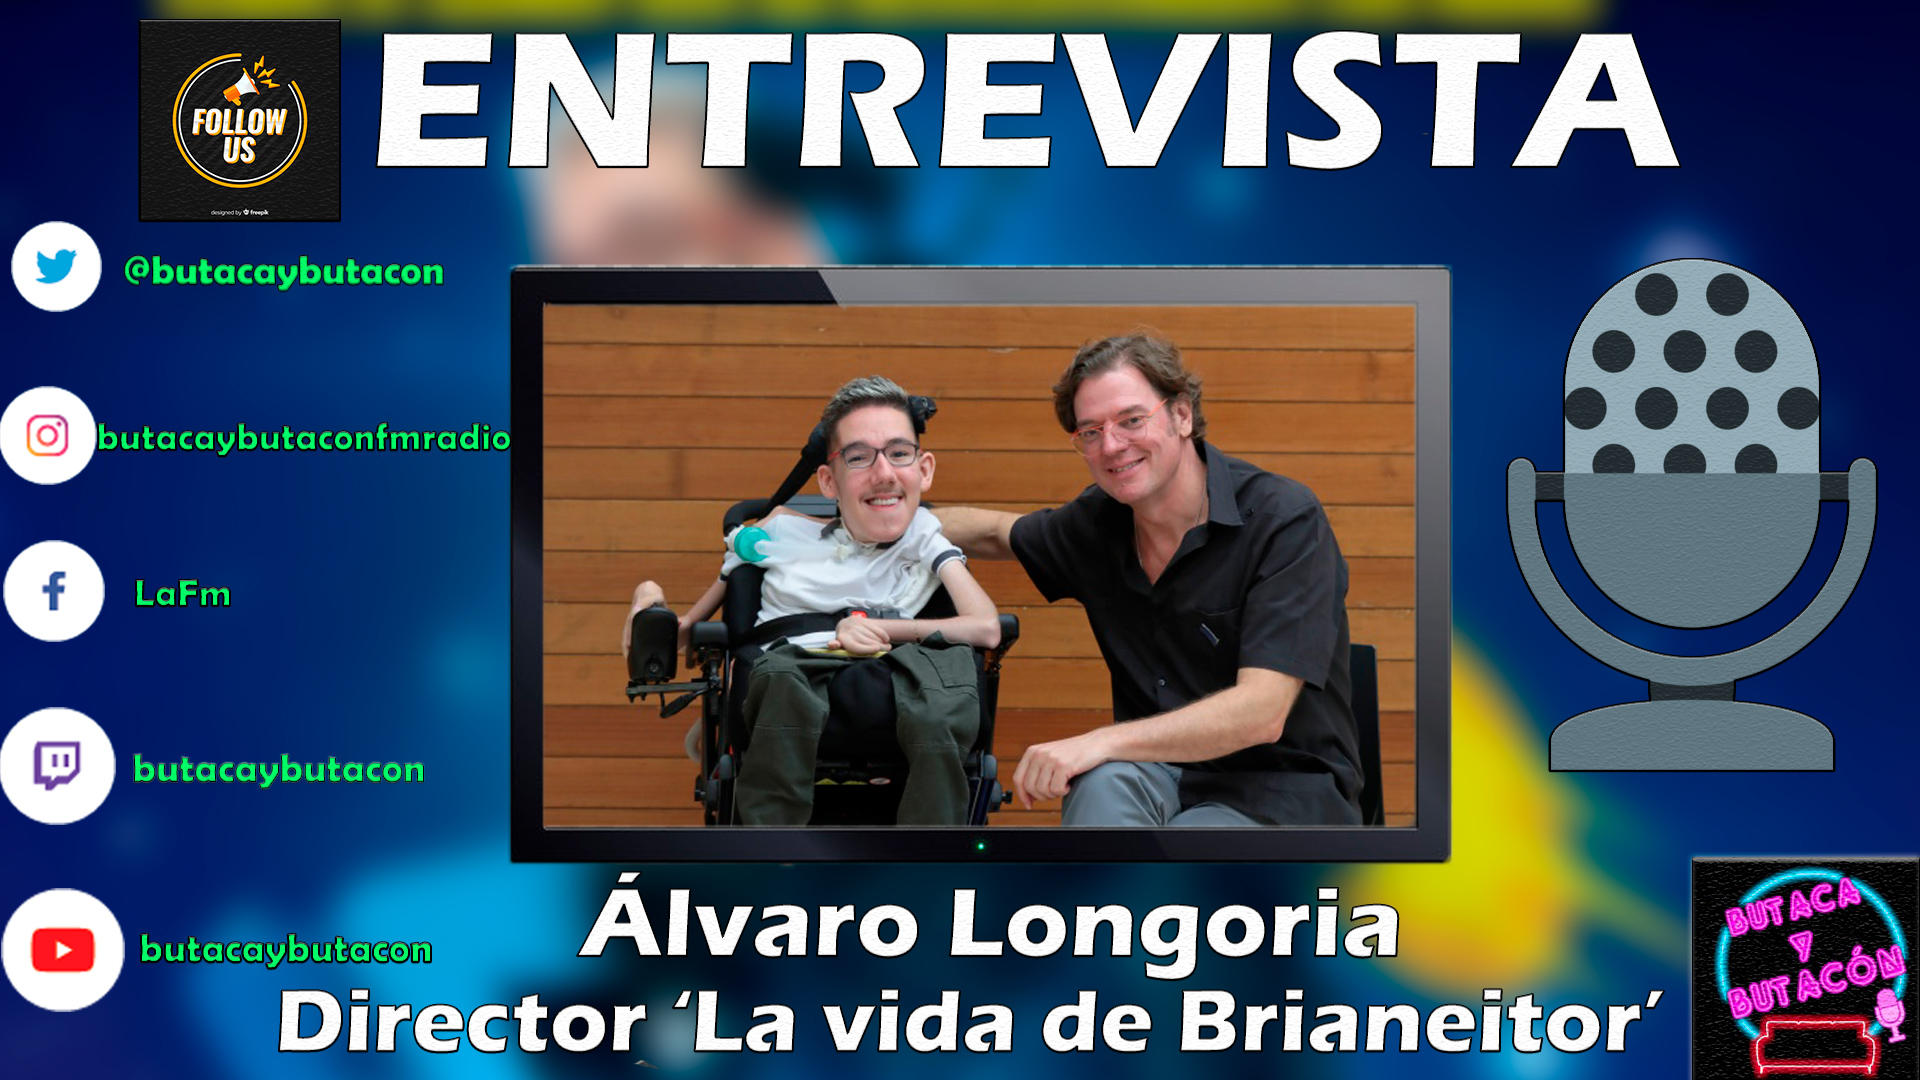 Álvaro Longoria: "Brianeitor es un ser de luz, te cambia la vida conocer alguien como él"